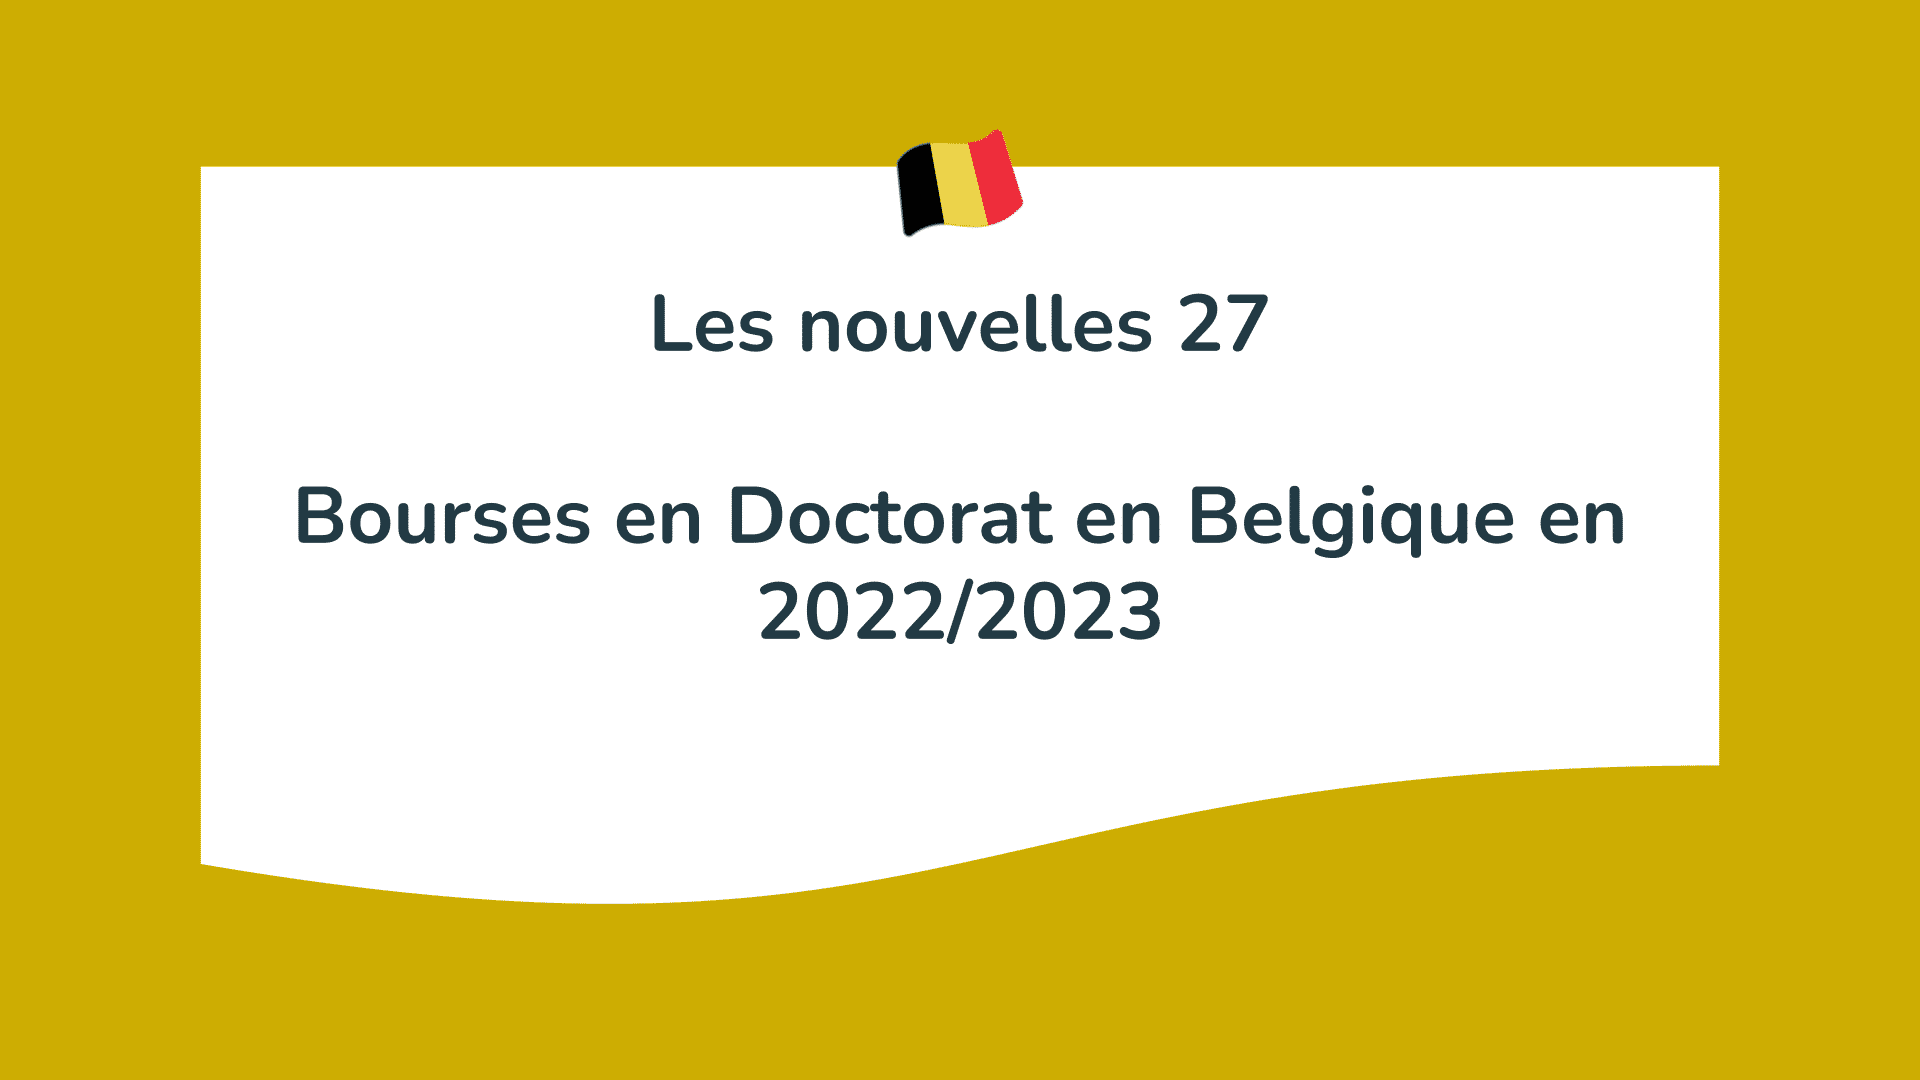 Bourses en Doctorat en Belgique en 2022/2023